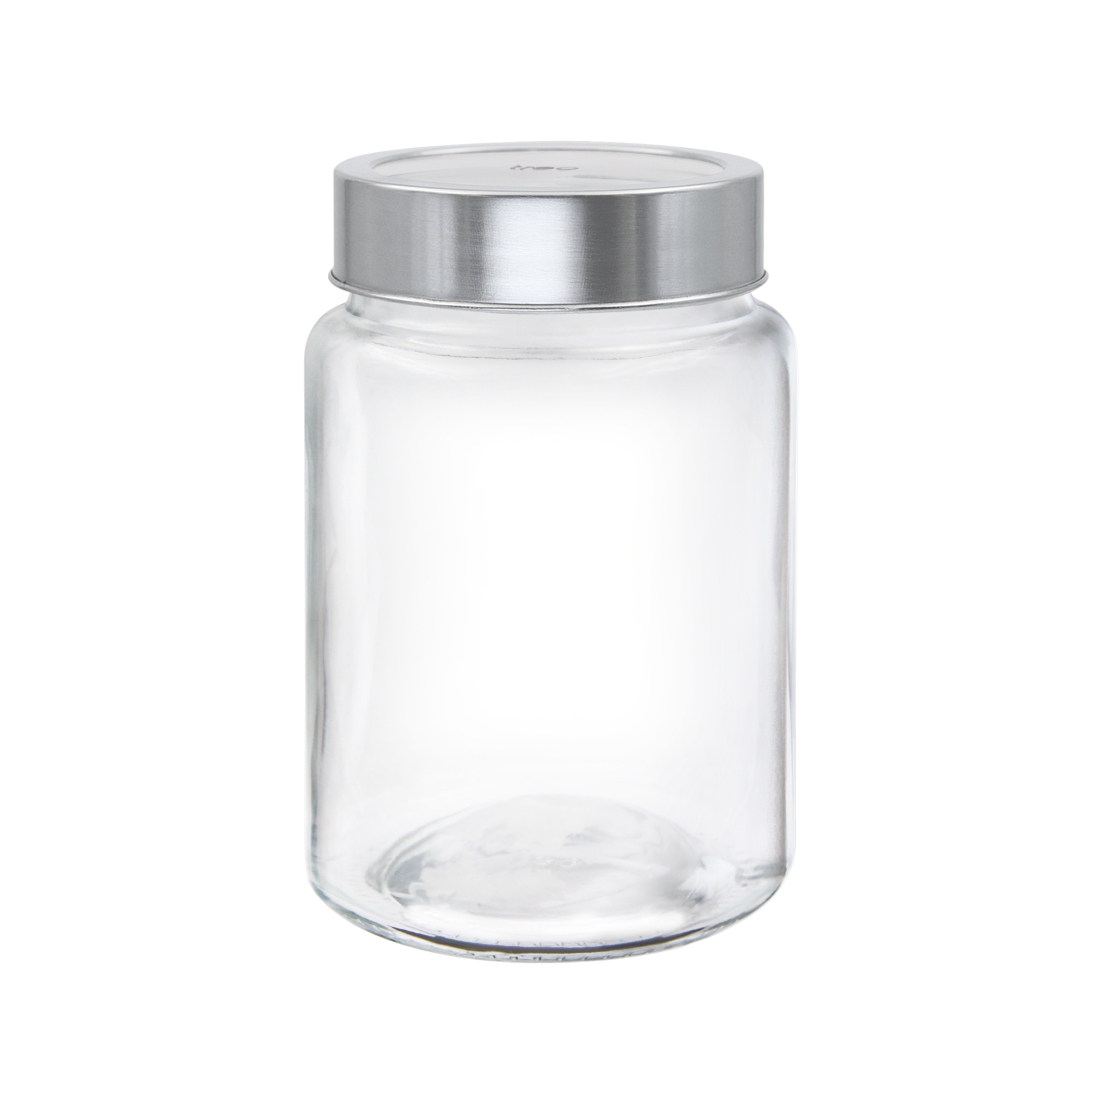 Treo Radius Glass Jar